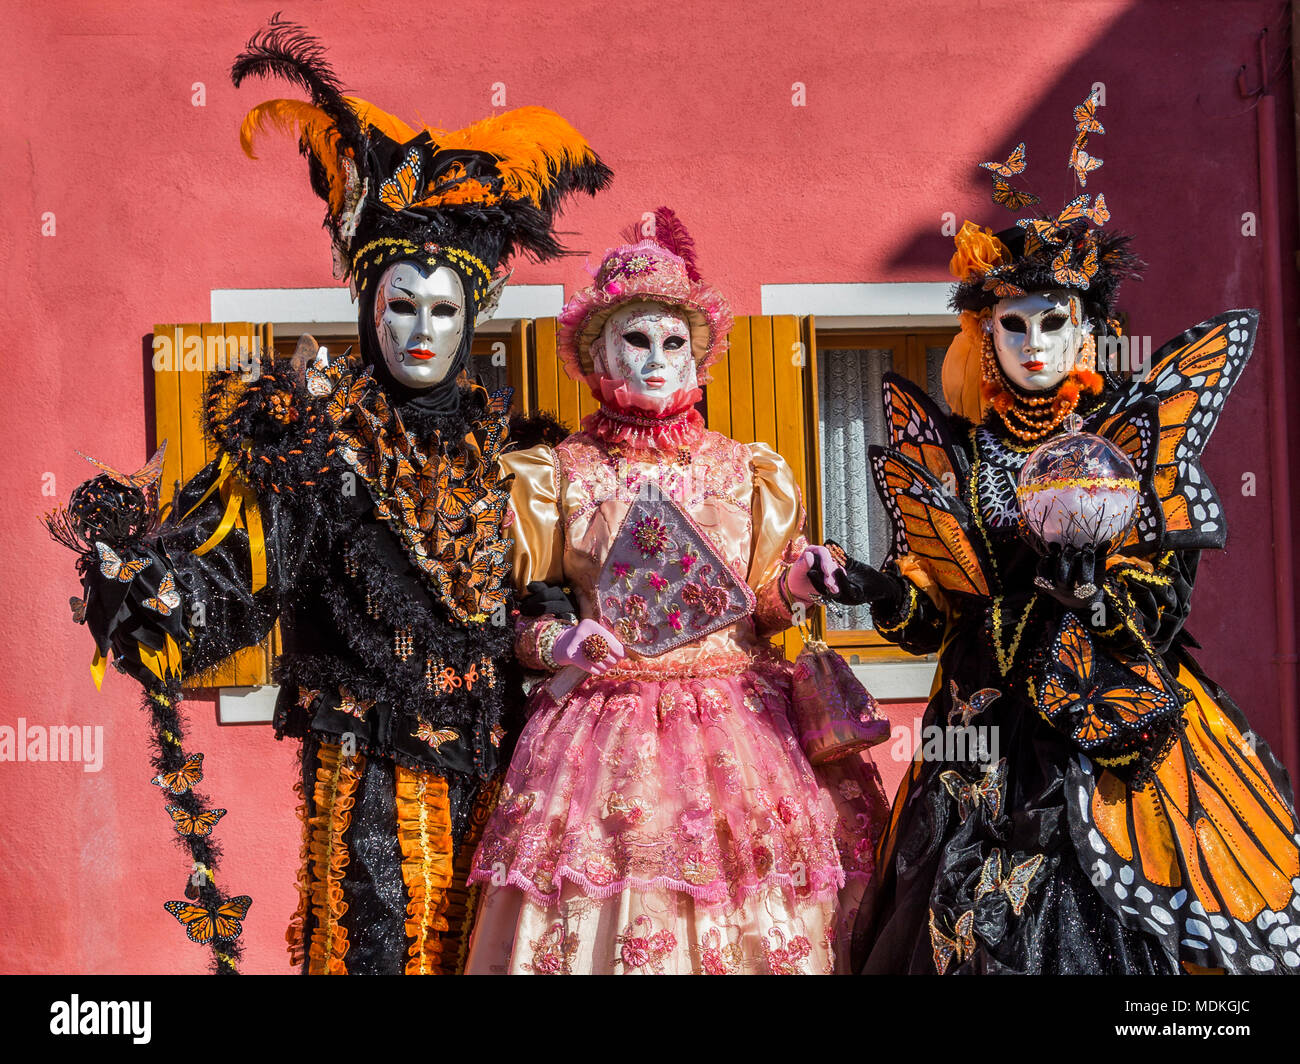 Carnaval de Venise, costumes, masques, bal masqué, Février, Piazza San Marco, la Place St Marc Banque D'Images